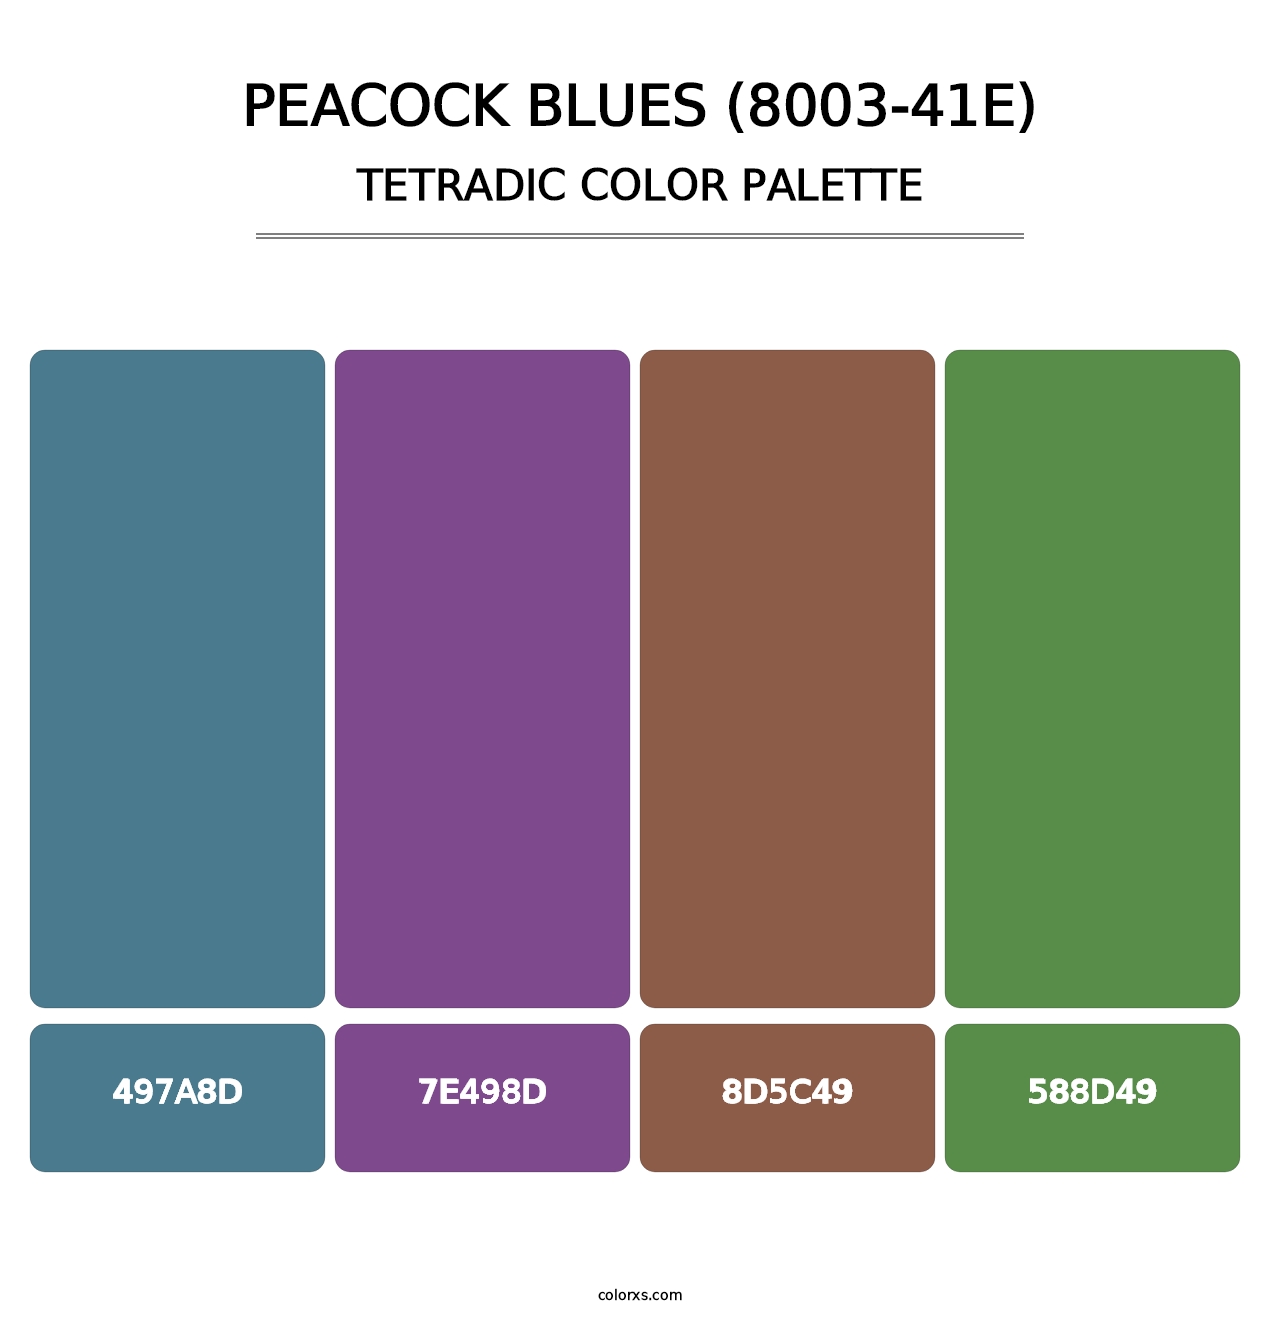 Peacock Blues (8003-41E) - Tetradic Color Palette